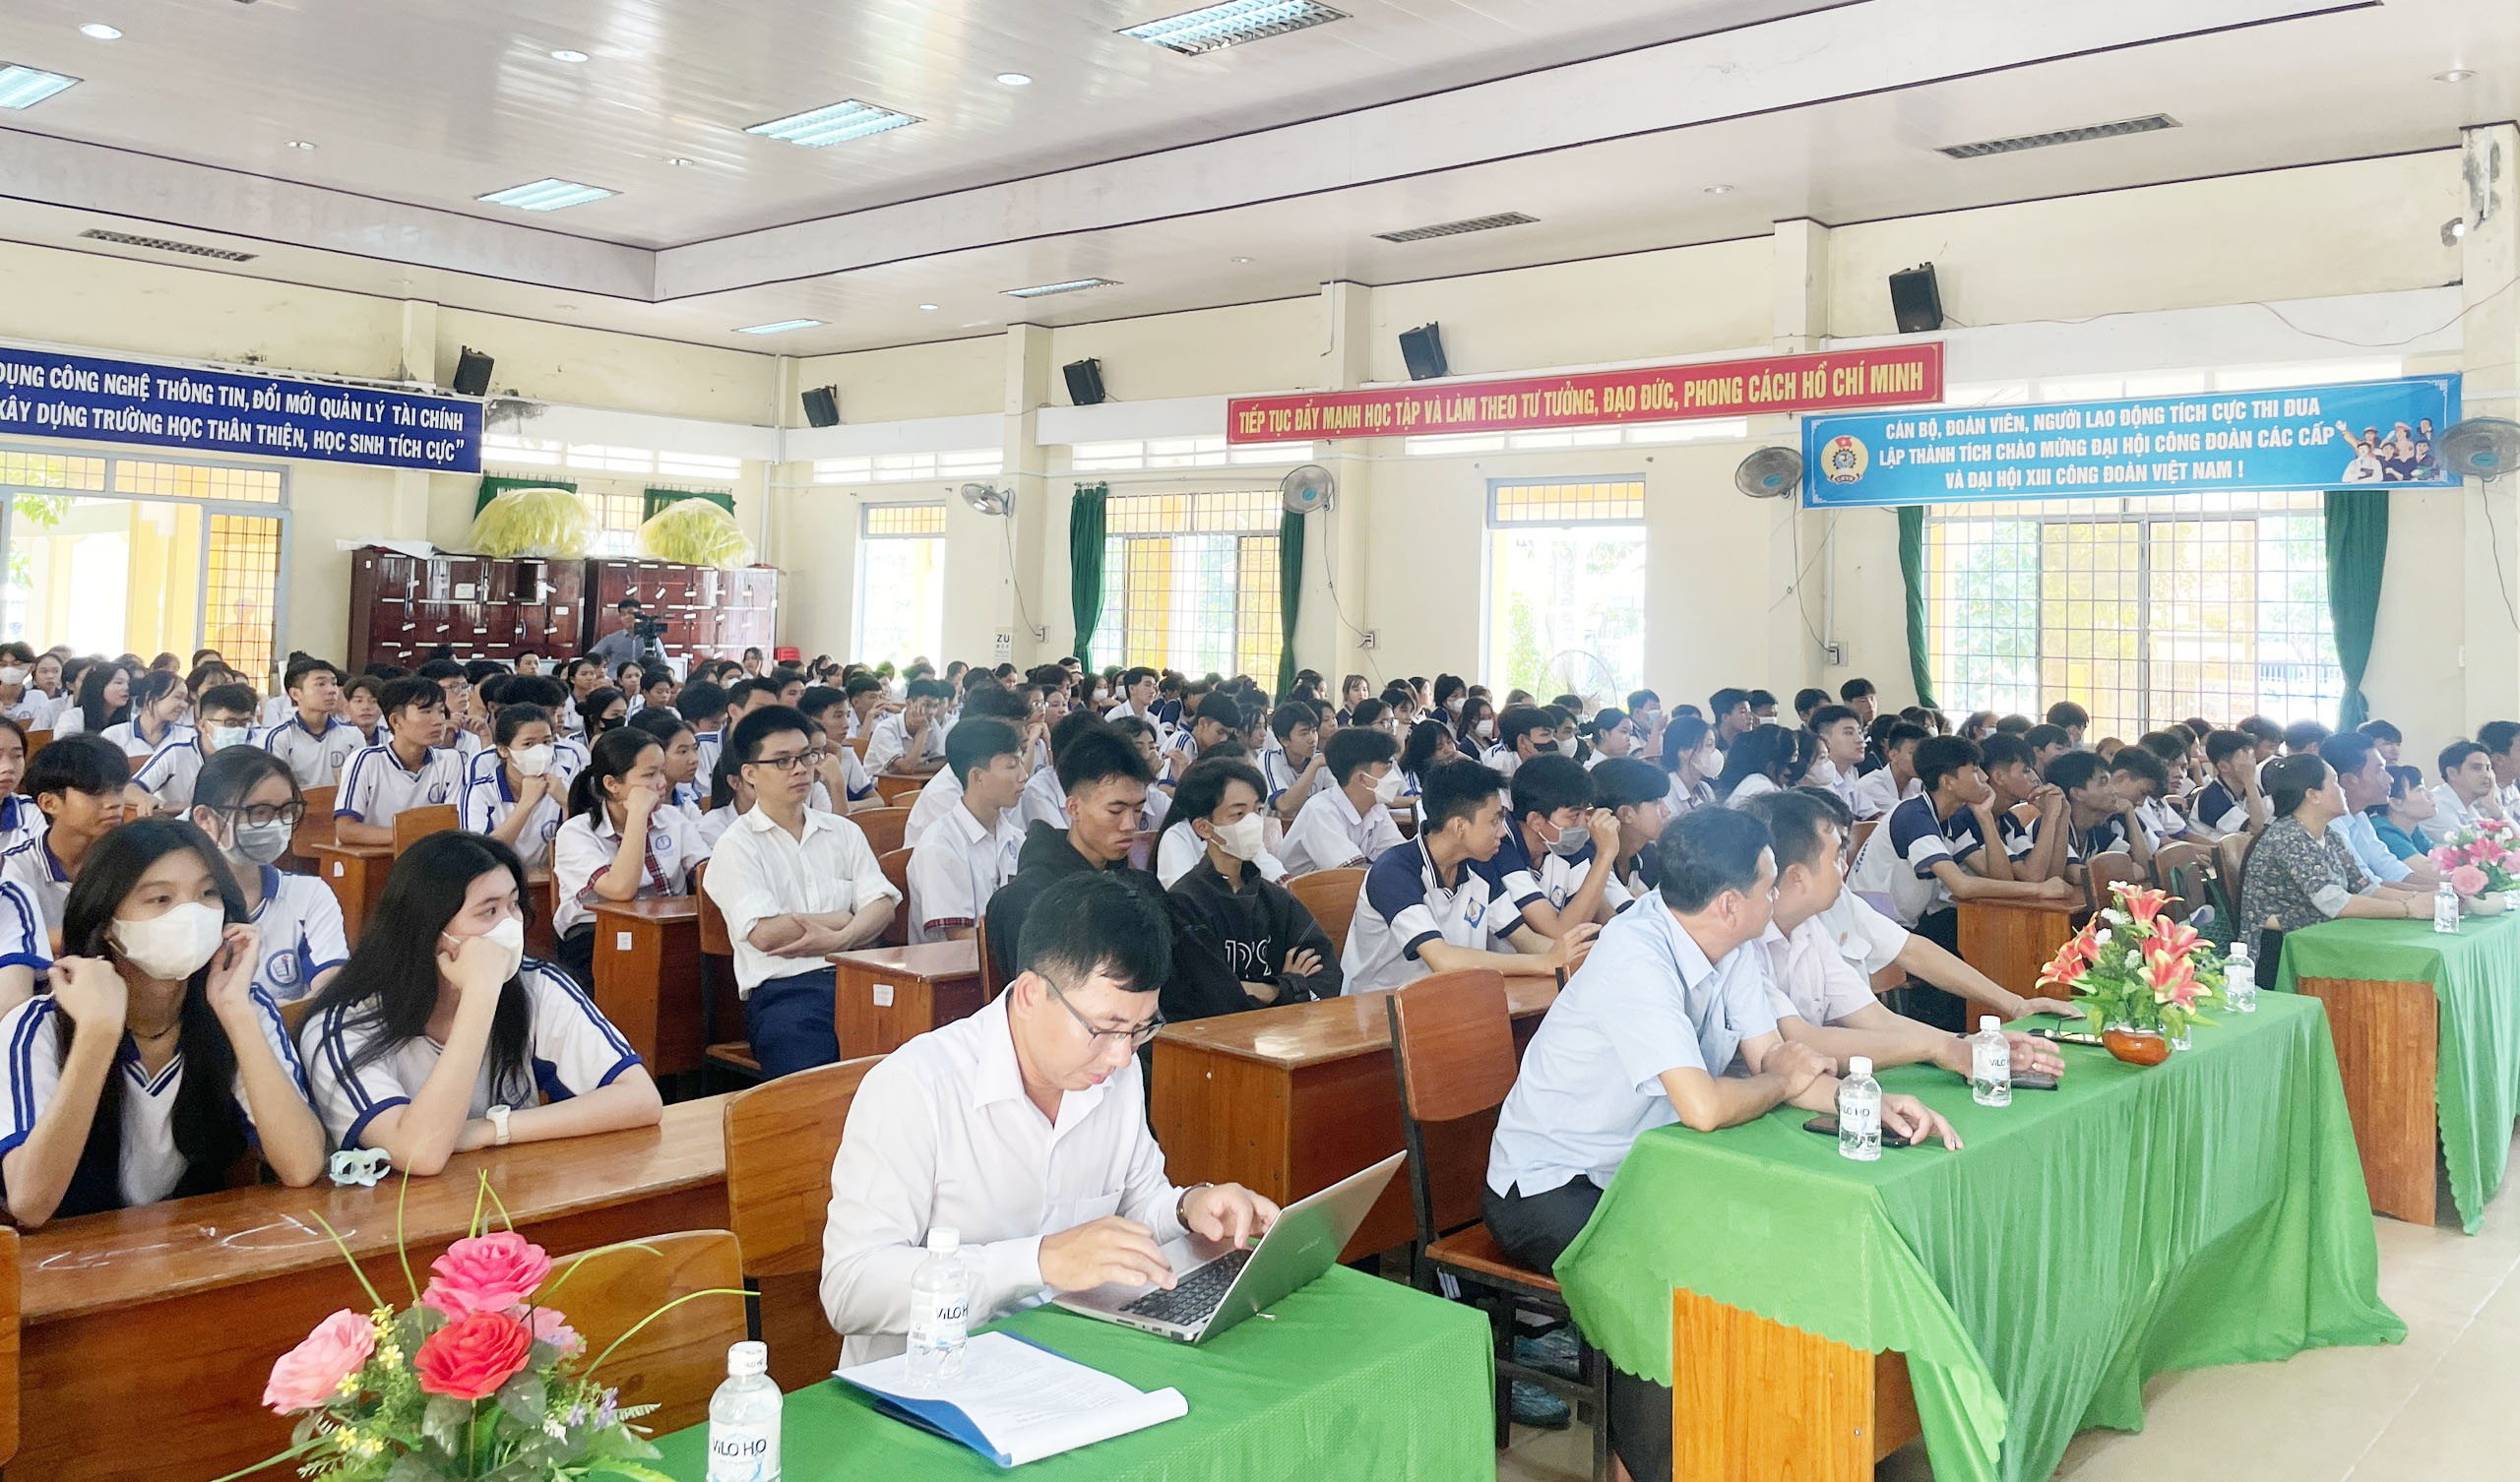 Học sinh Trường THPT Võ Văn Kiệt (Vũng Liêm) tham gia tư vấn.